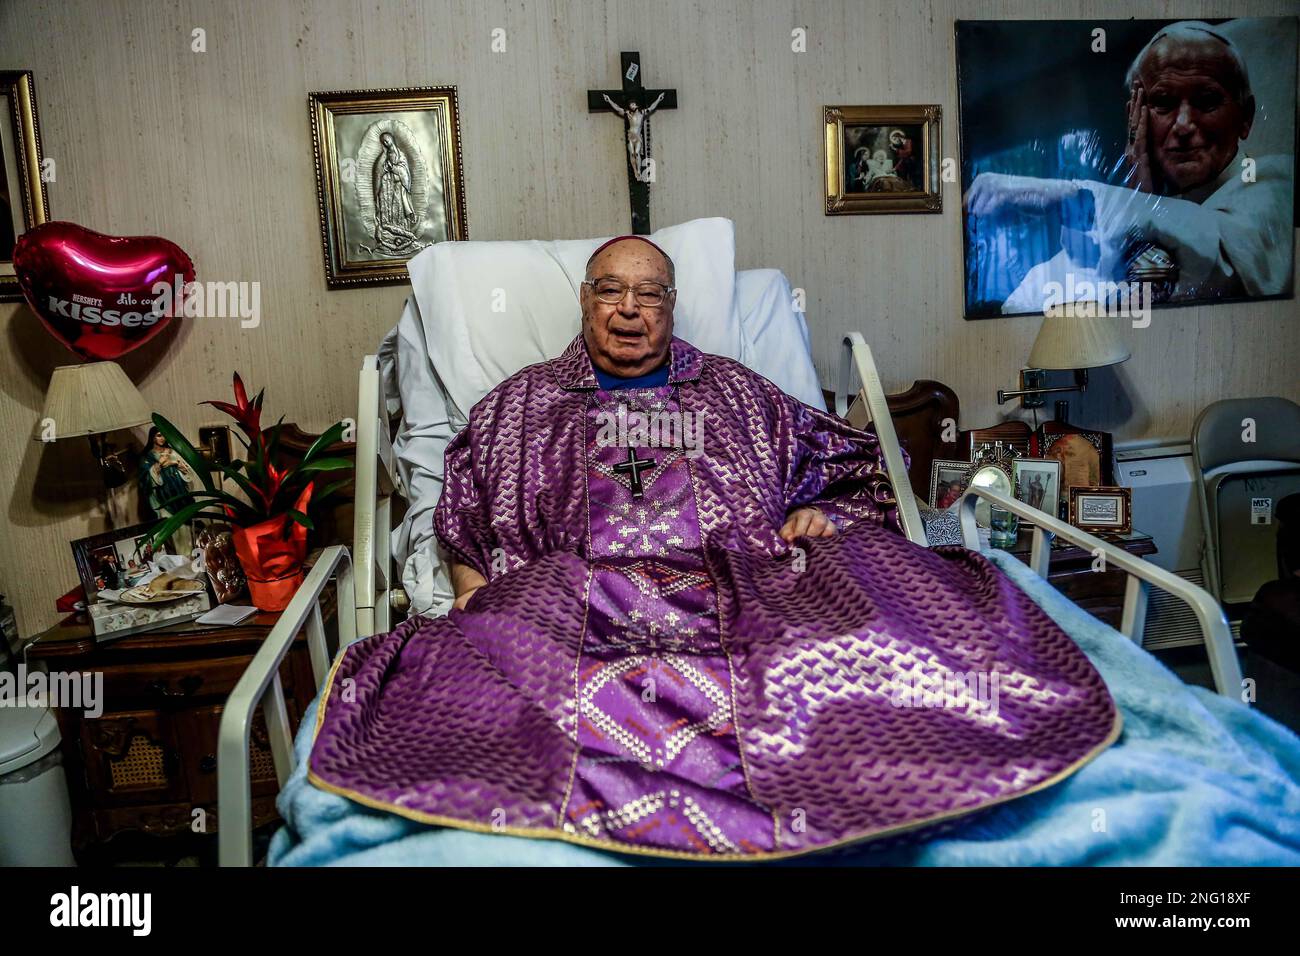 Misa de despedida del fallecido , Arzobismo Carlos Quintero Arce de 96 años, quin perdiera la vida el pásado lunes en la noche Foto Stock